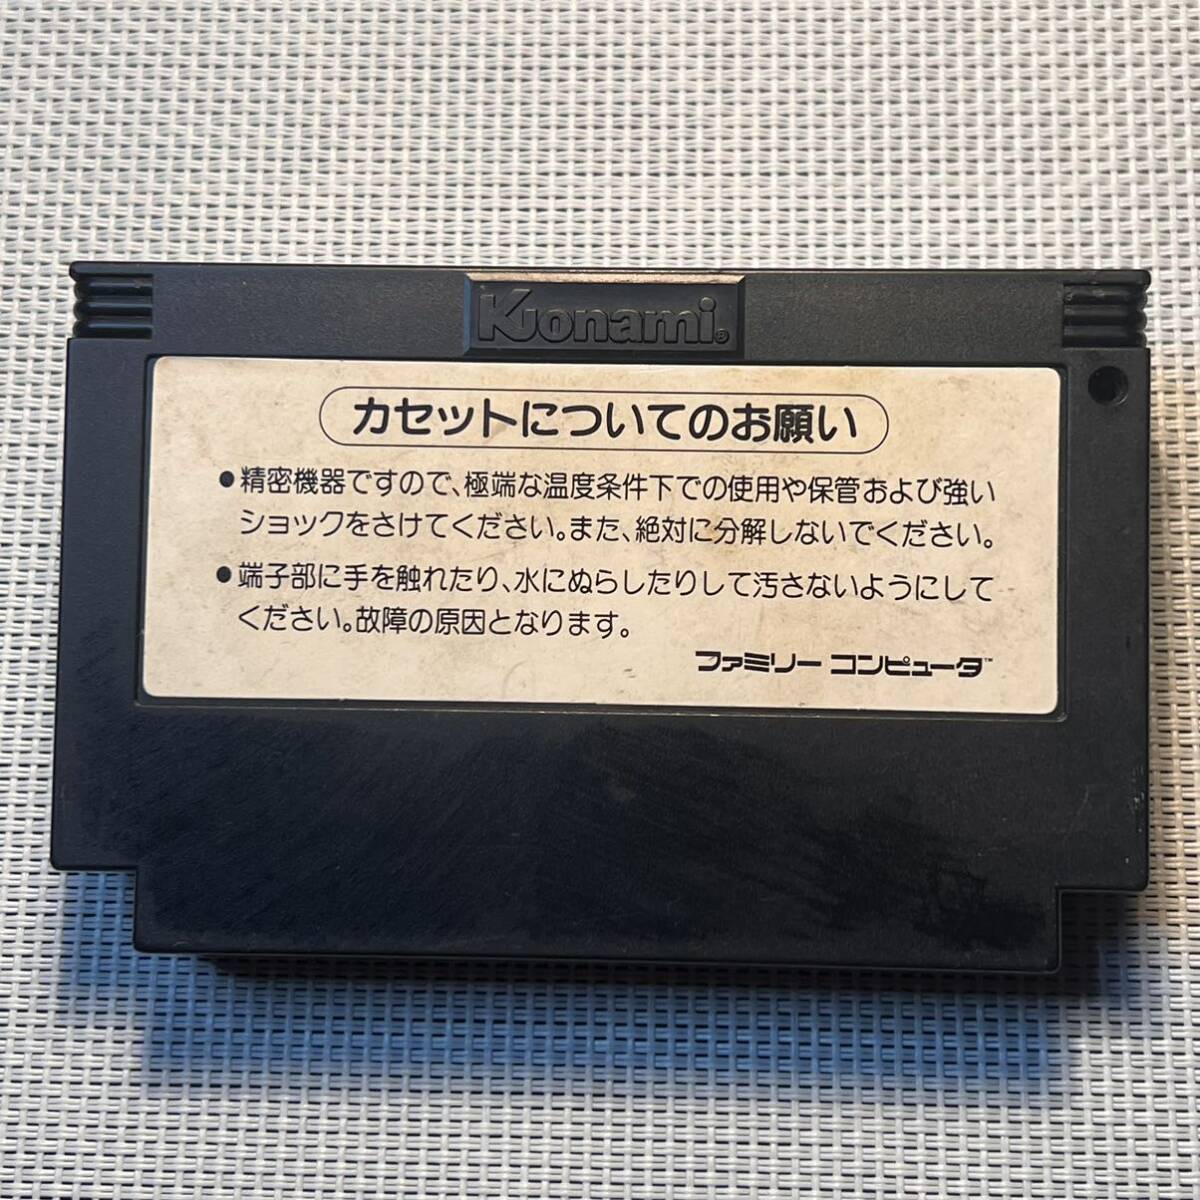 ファミリーコンピュータ ファミコン Nintendo ニンテンドー任天堂 ゲーム グラディウス ファミコンソフト Konami コナミ 長期保存品_画像2